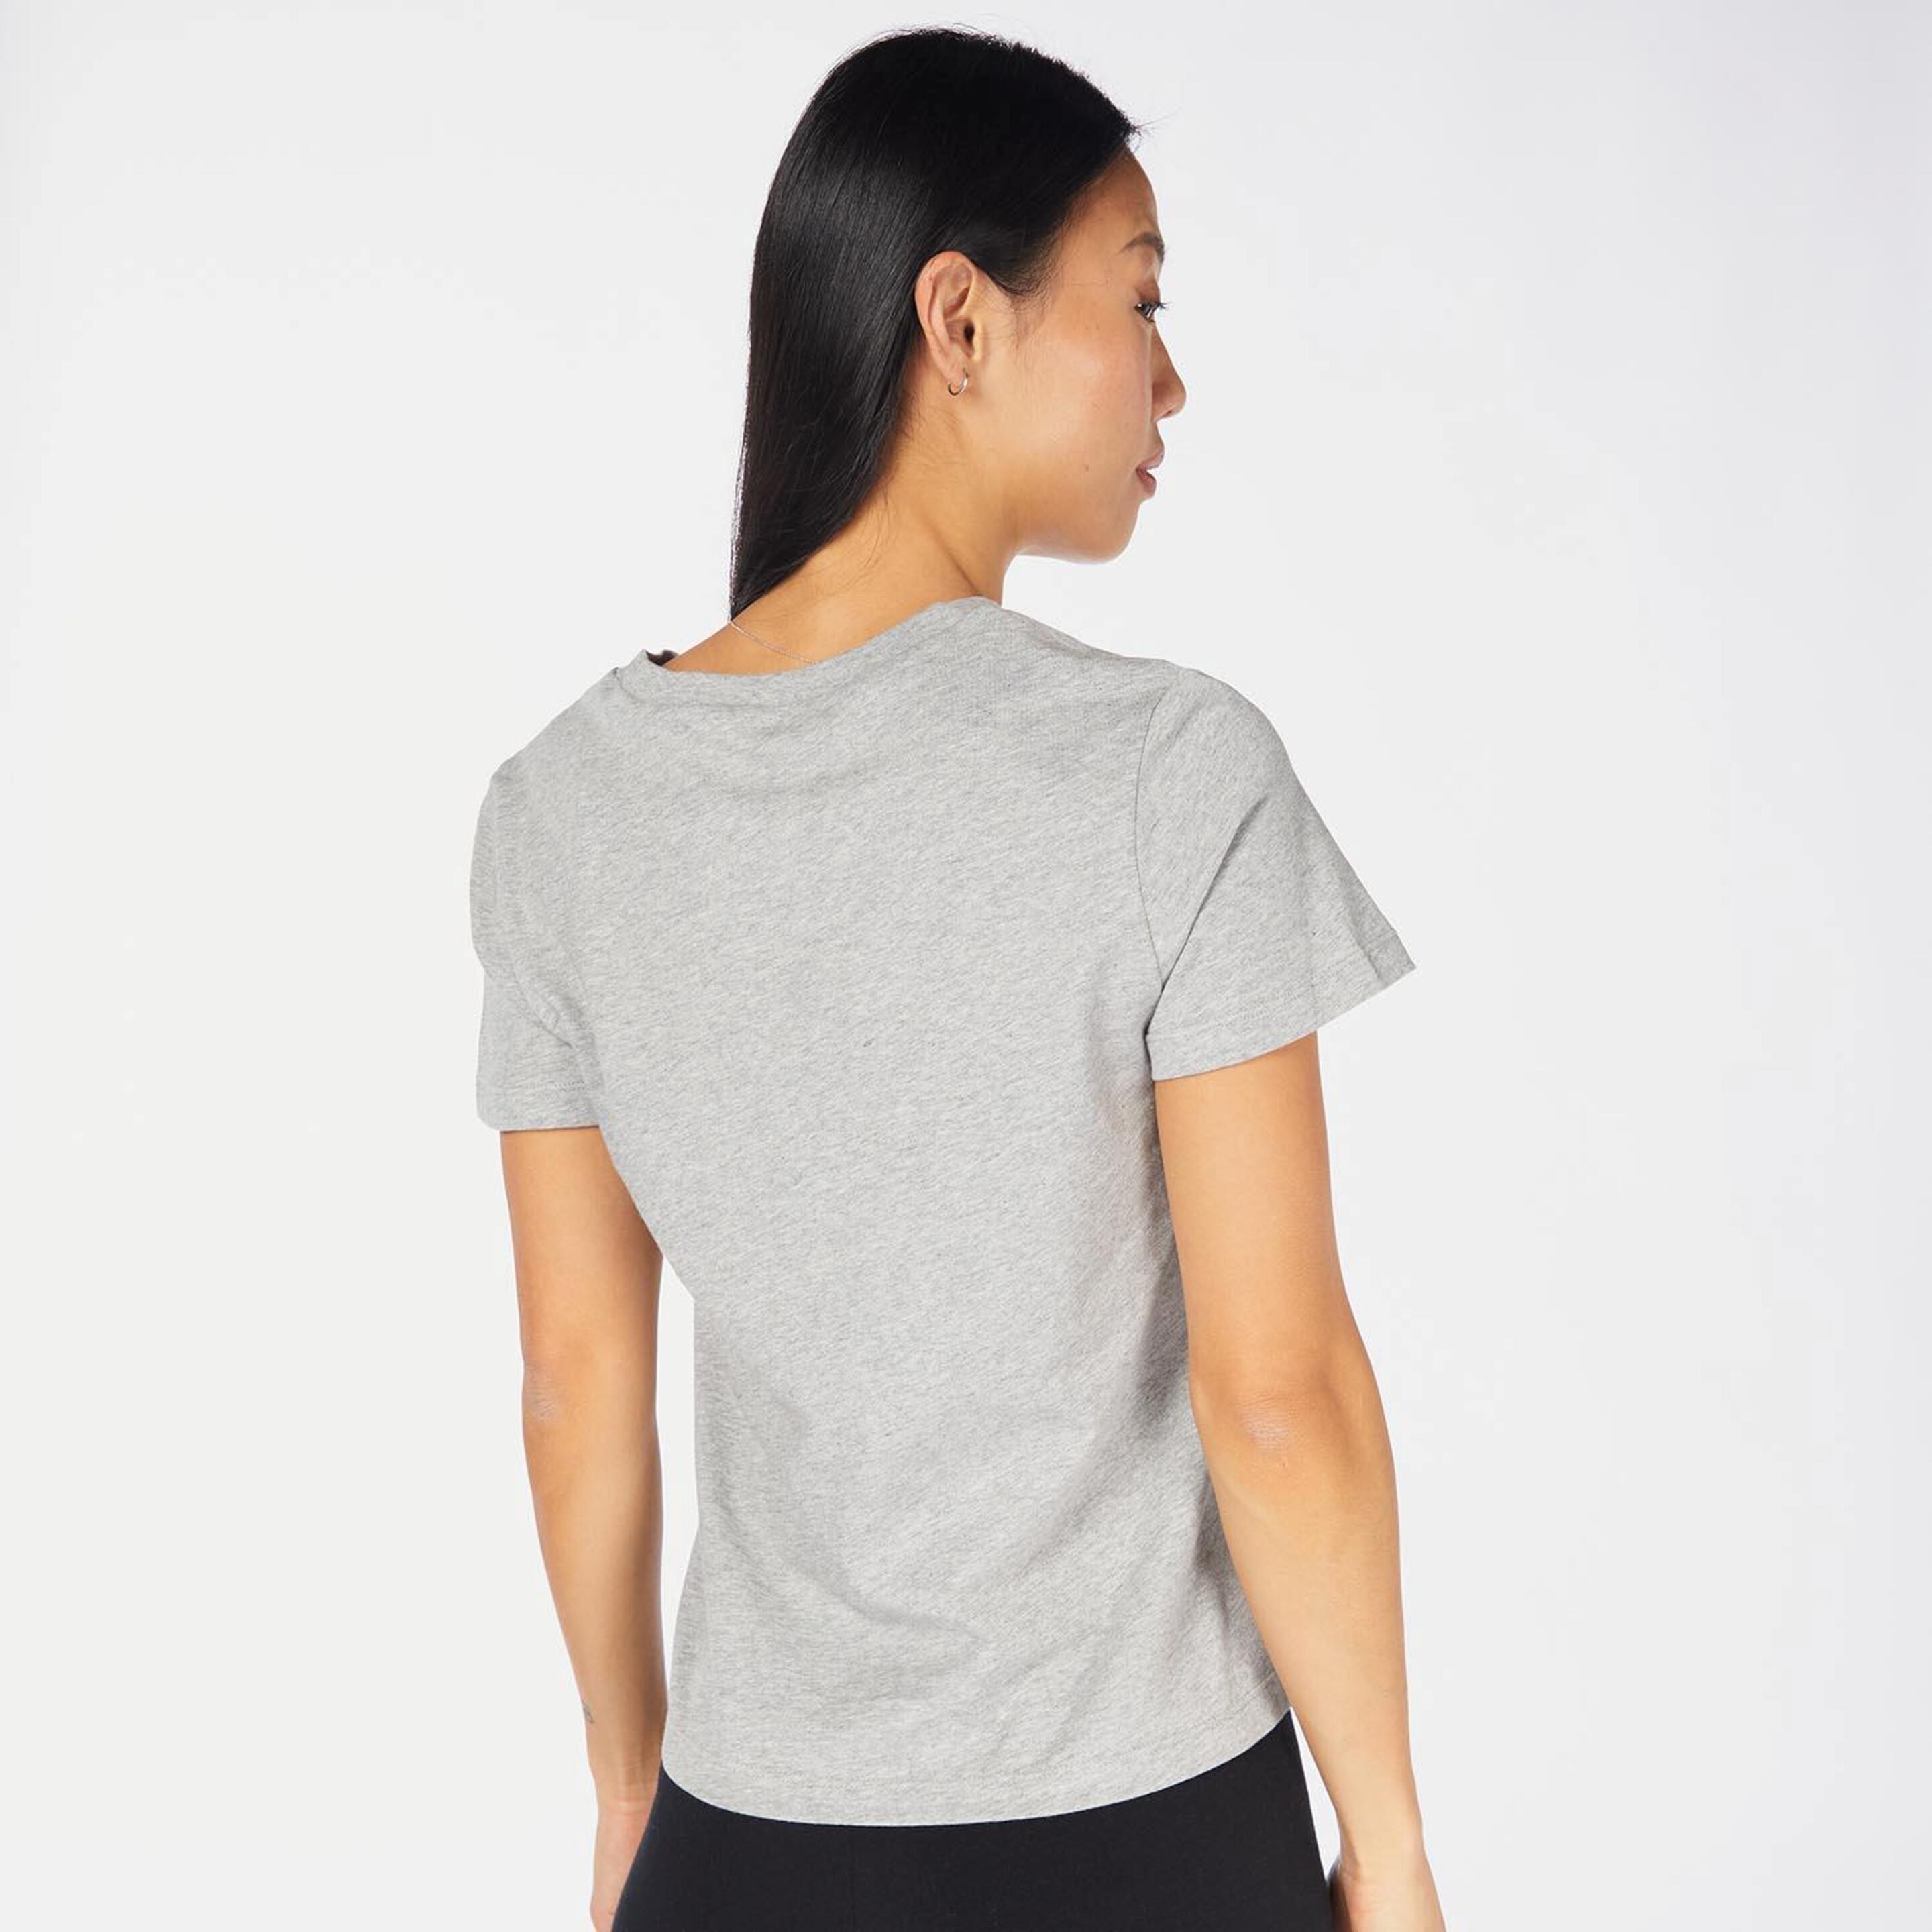 Reebok Identity Small Logo - Gris - Camiseta Mujer  | Sprinter